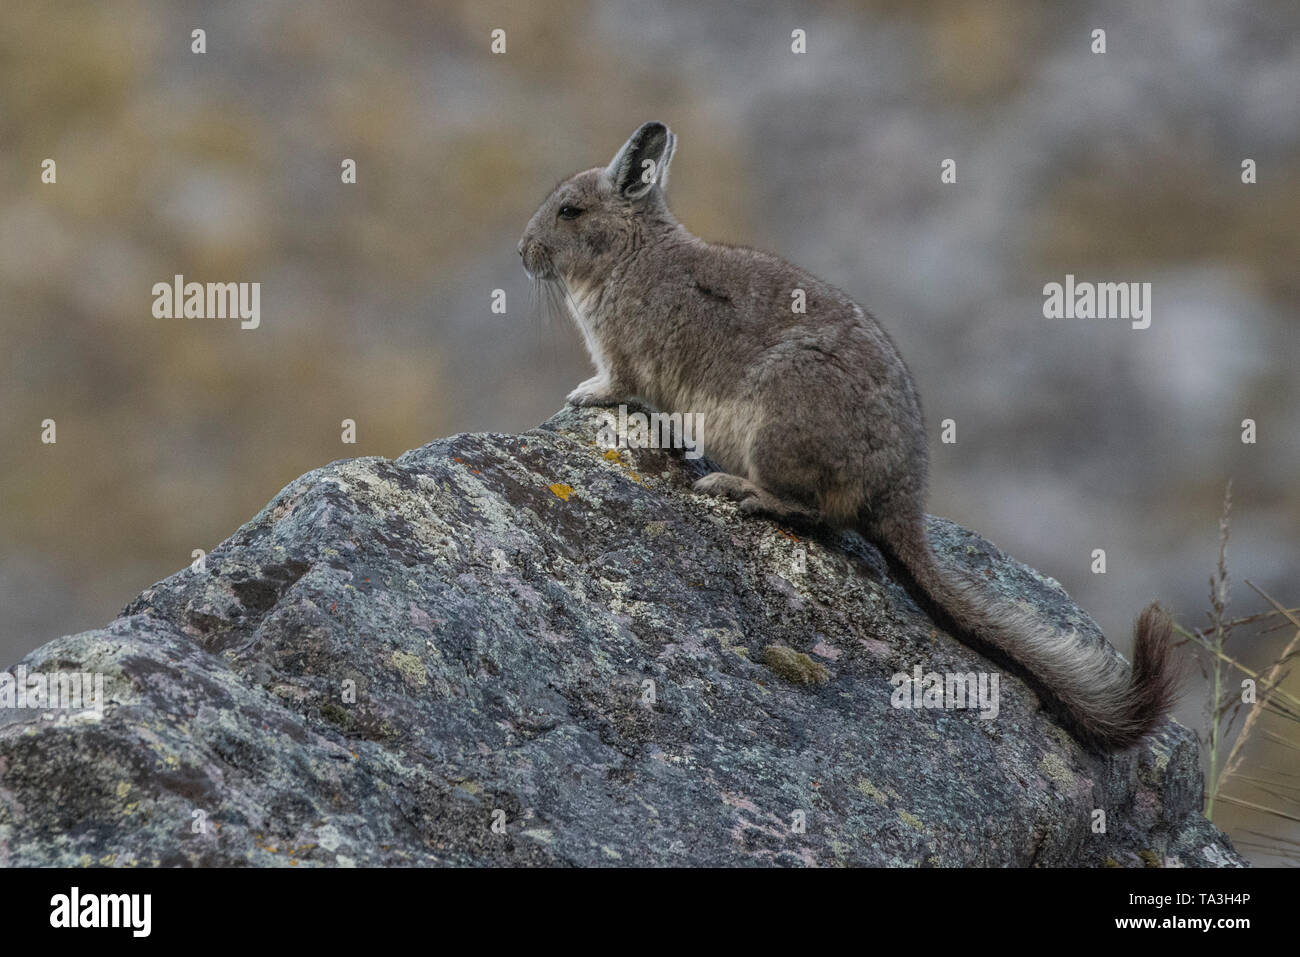 Northern viscacha (Lagidium peruanum) von hoch in den Anden im Süden von Peru. Es überwacht die Bedrohungen von oben auf einem hohen Felsen. Stockfoto